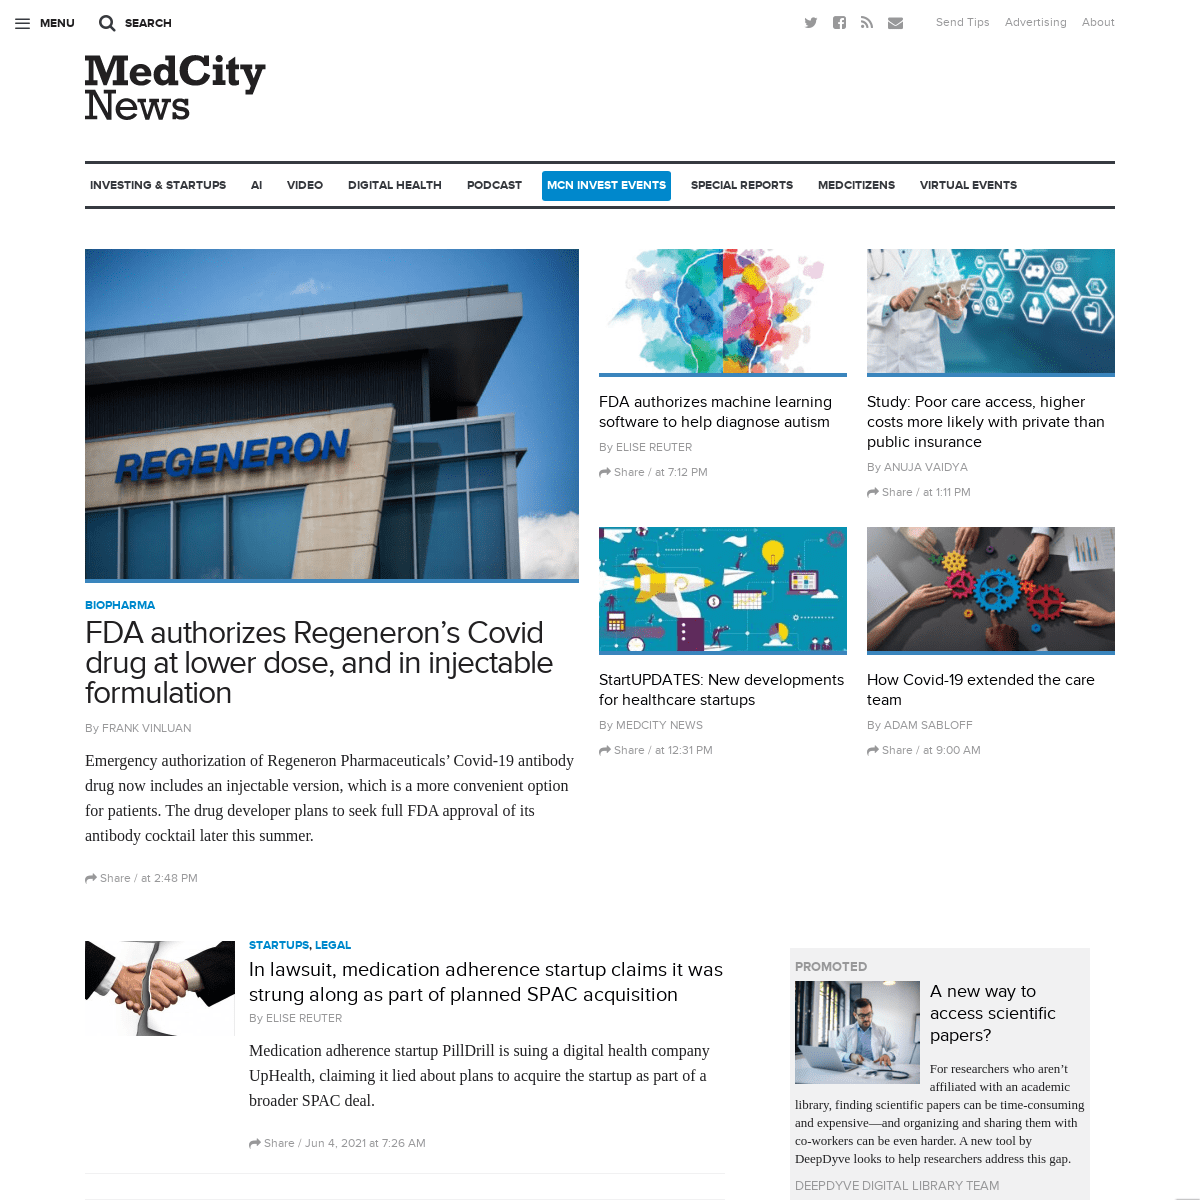 A complete backup of https://medcitynews.com